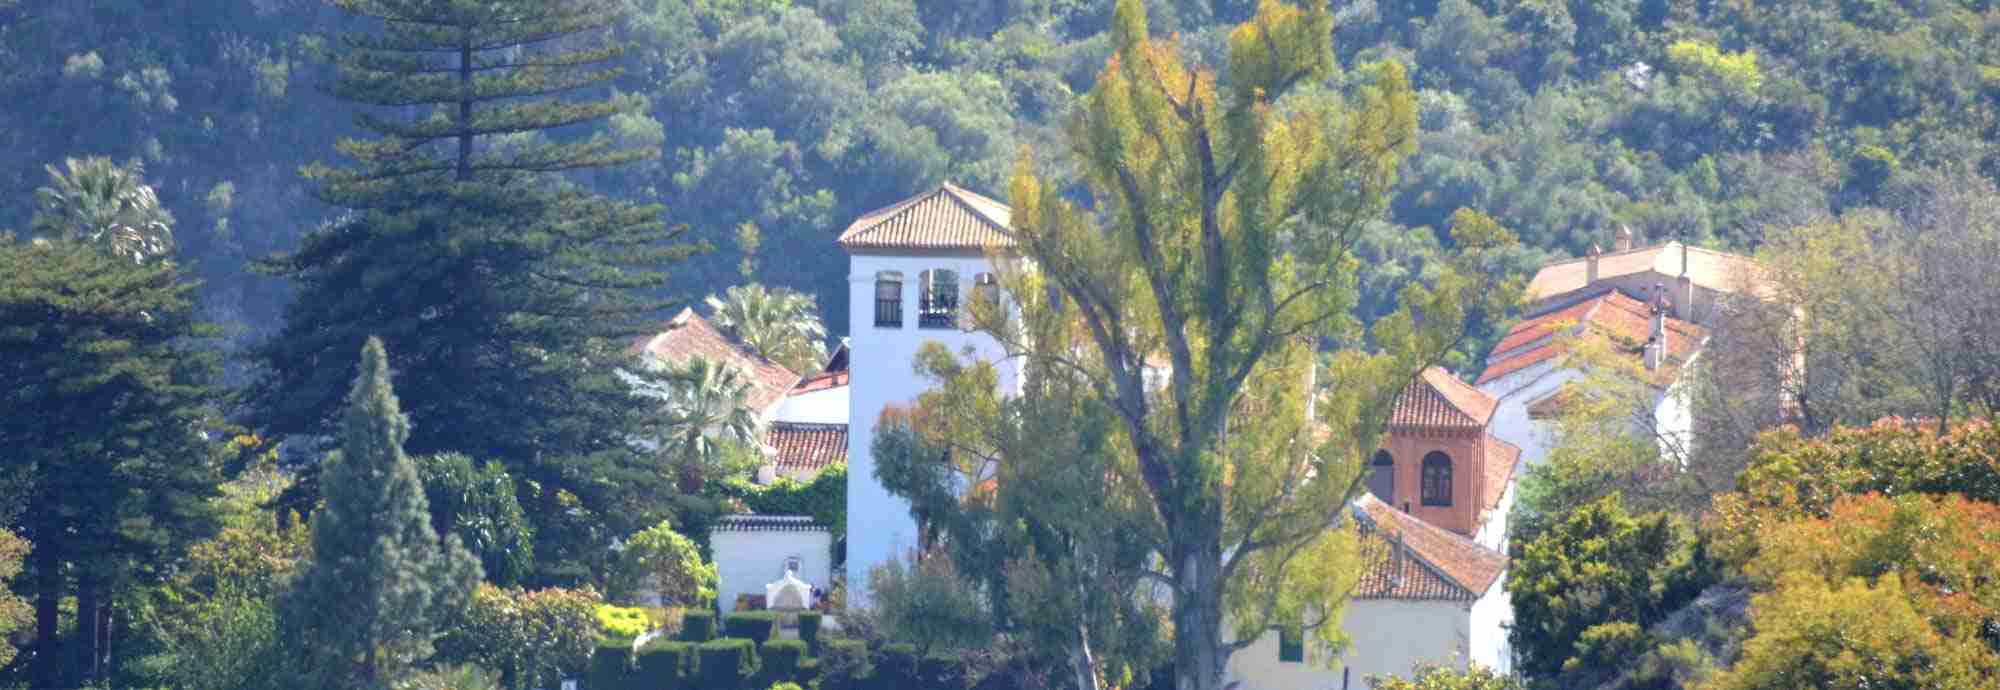 Palacete ubicado en precioso entorno para grupos en Granada